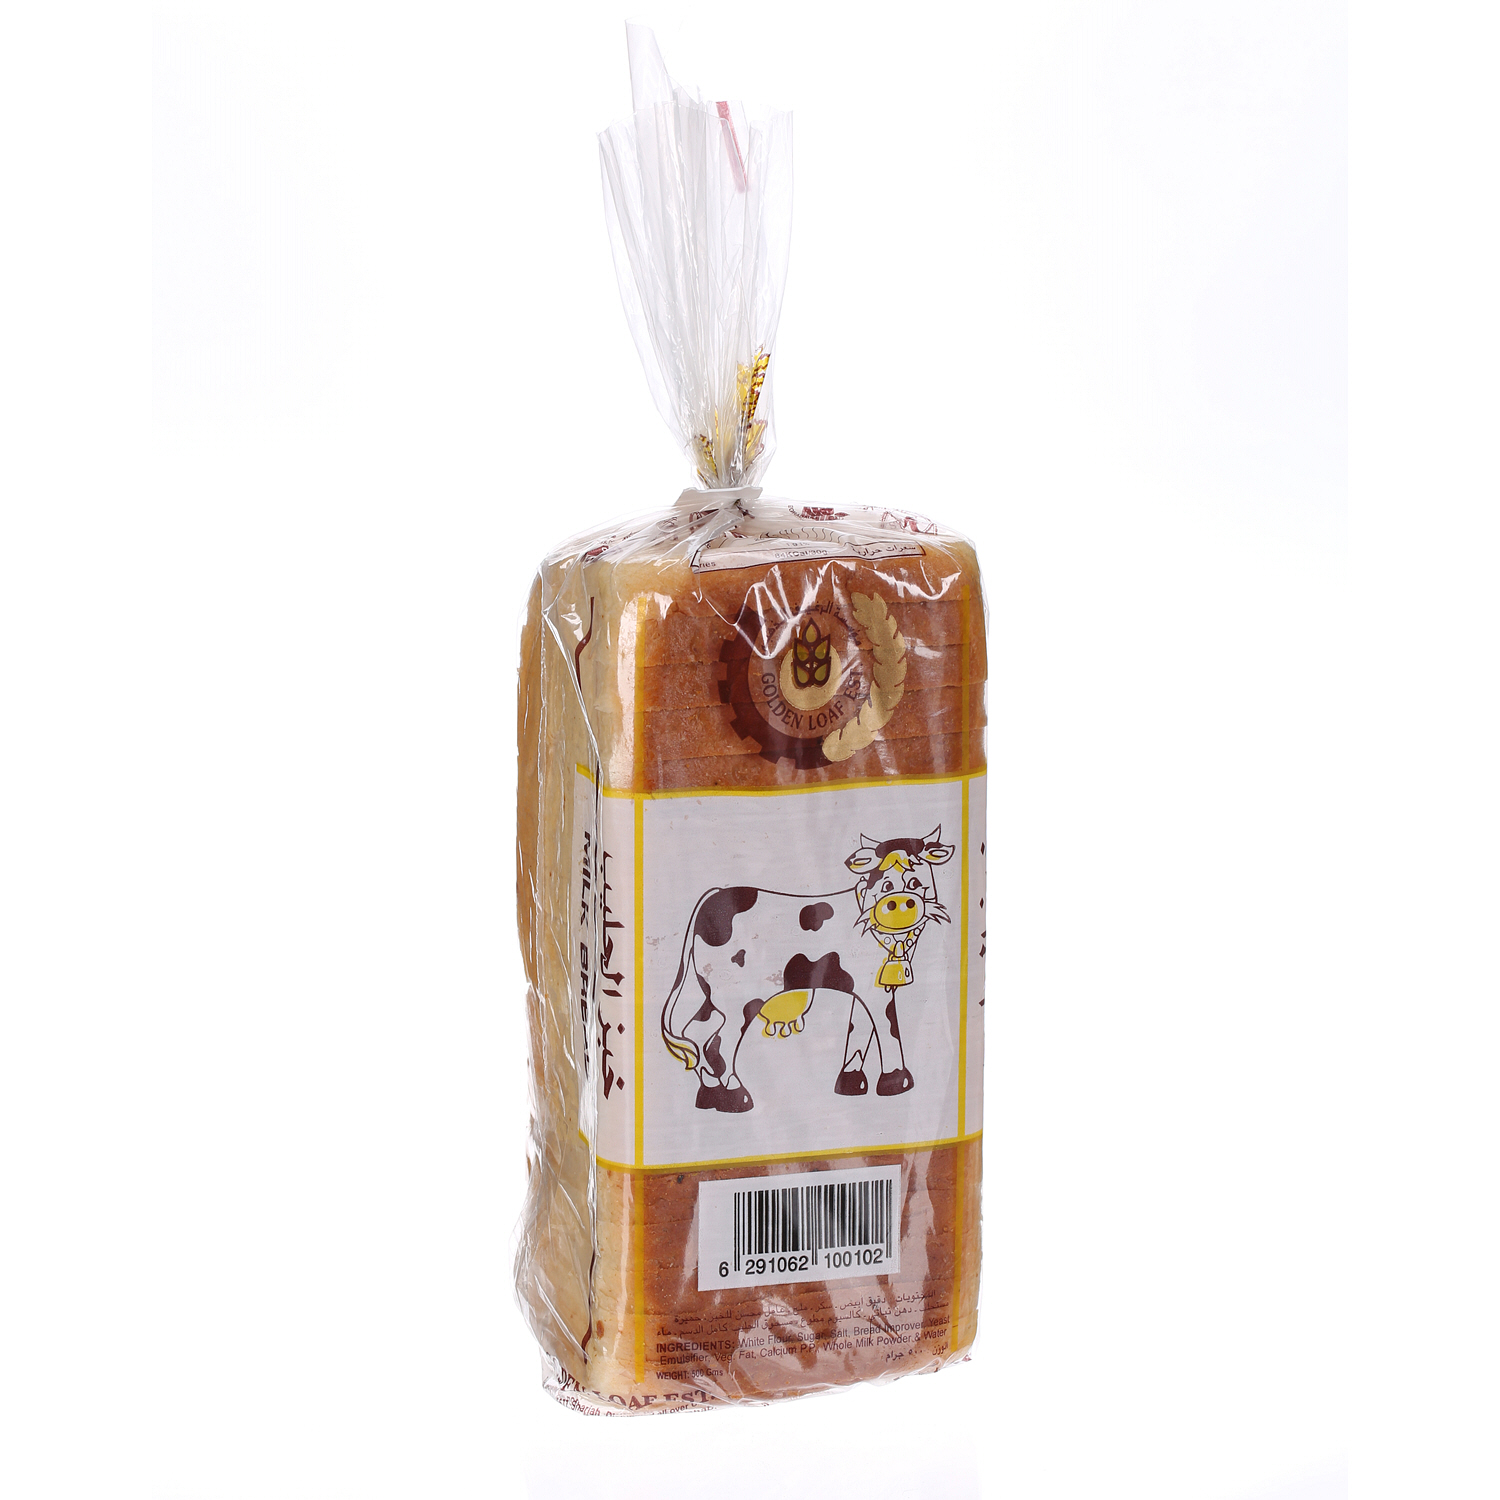 Golden Loaf Bread Milk Large